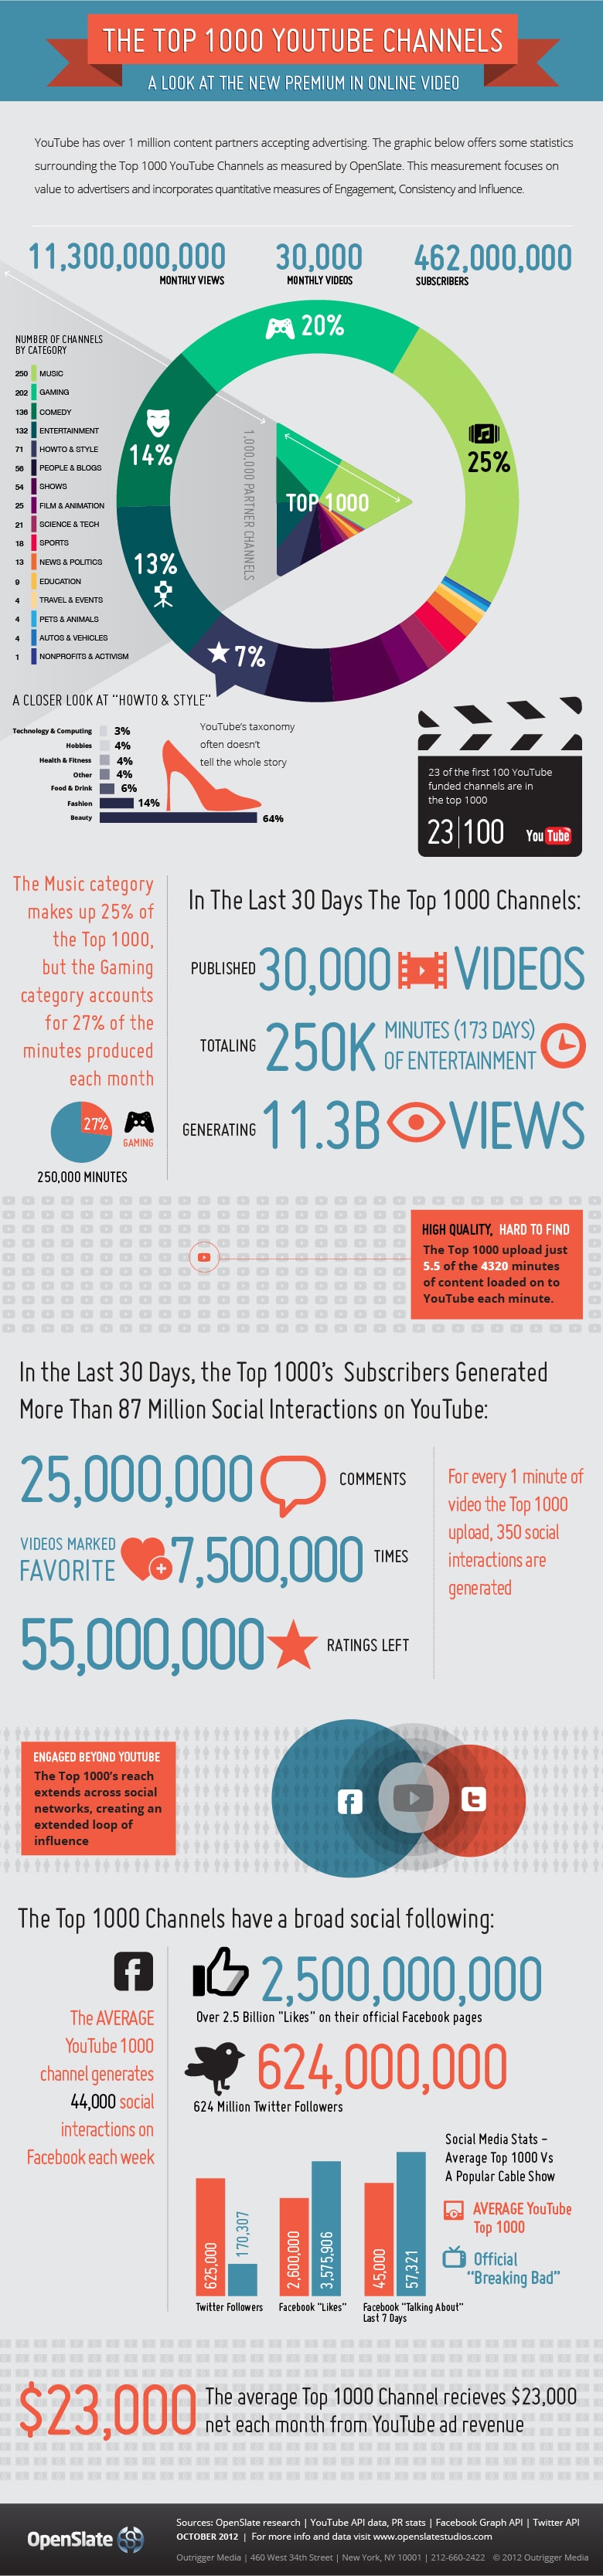 Le Top 1000 Youtube en infographie